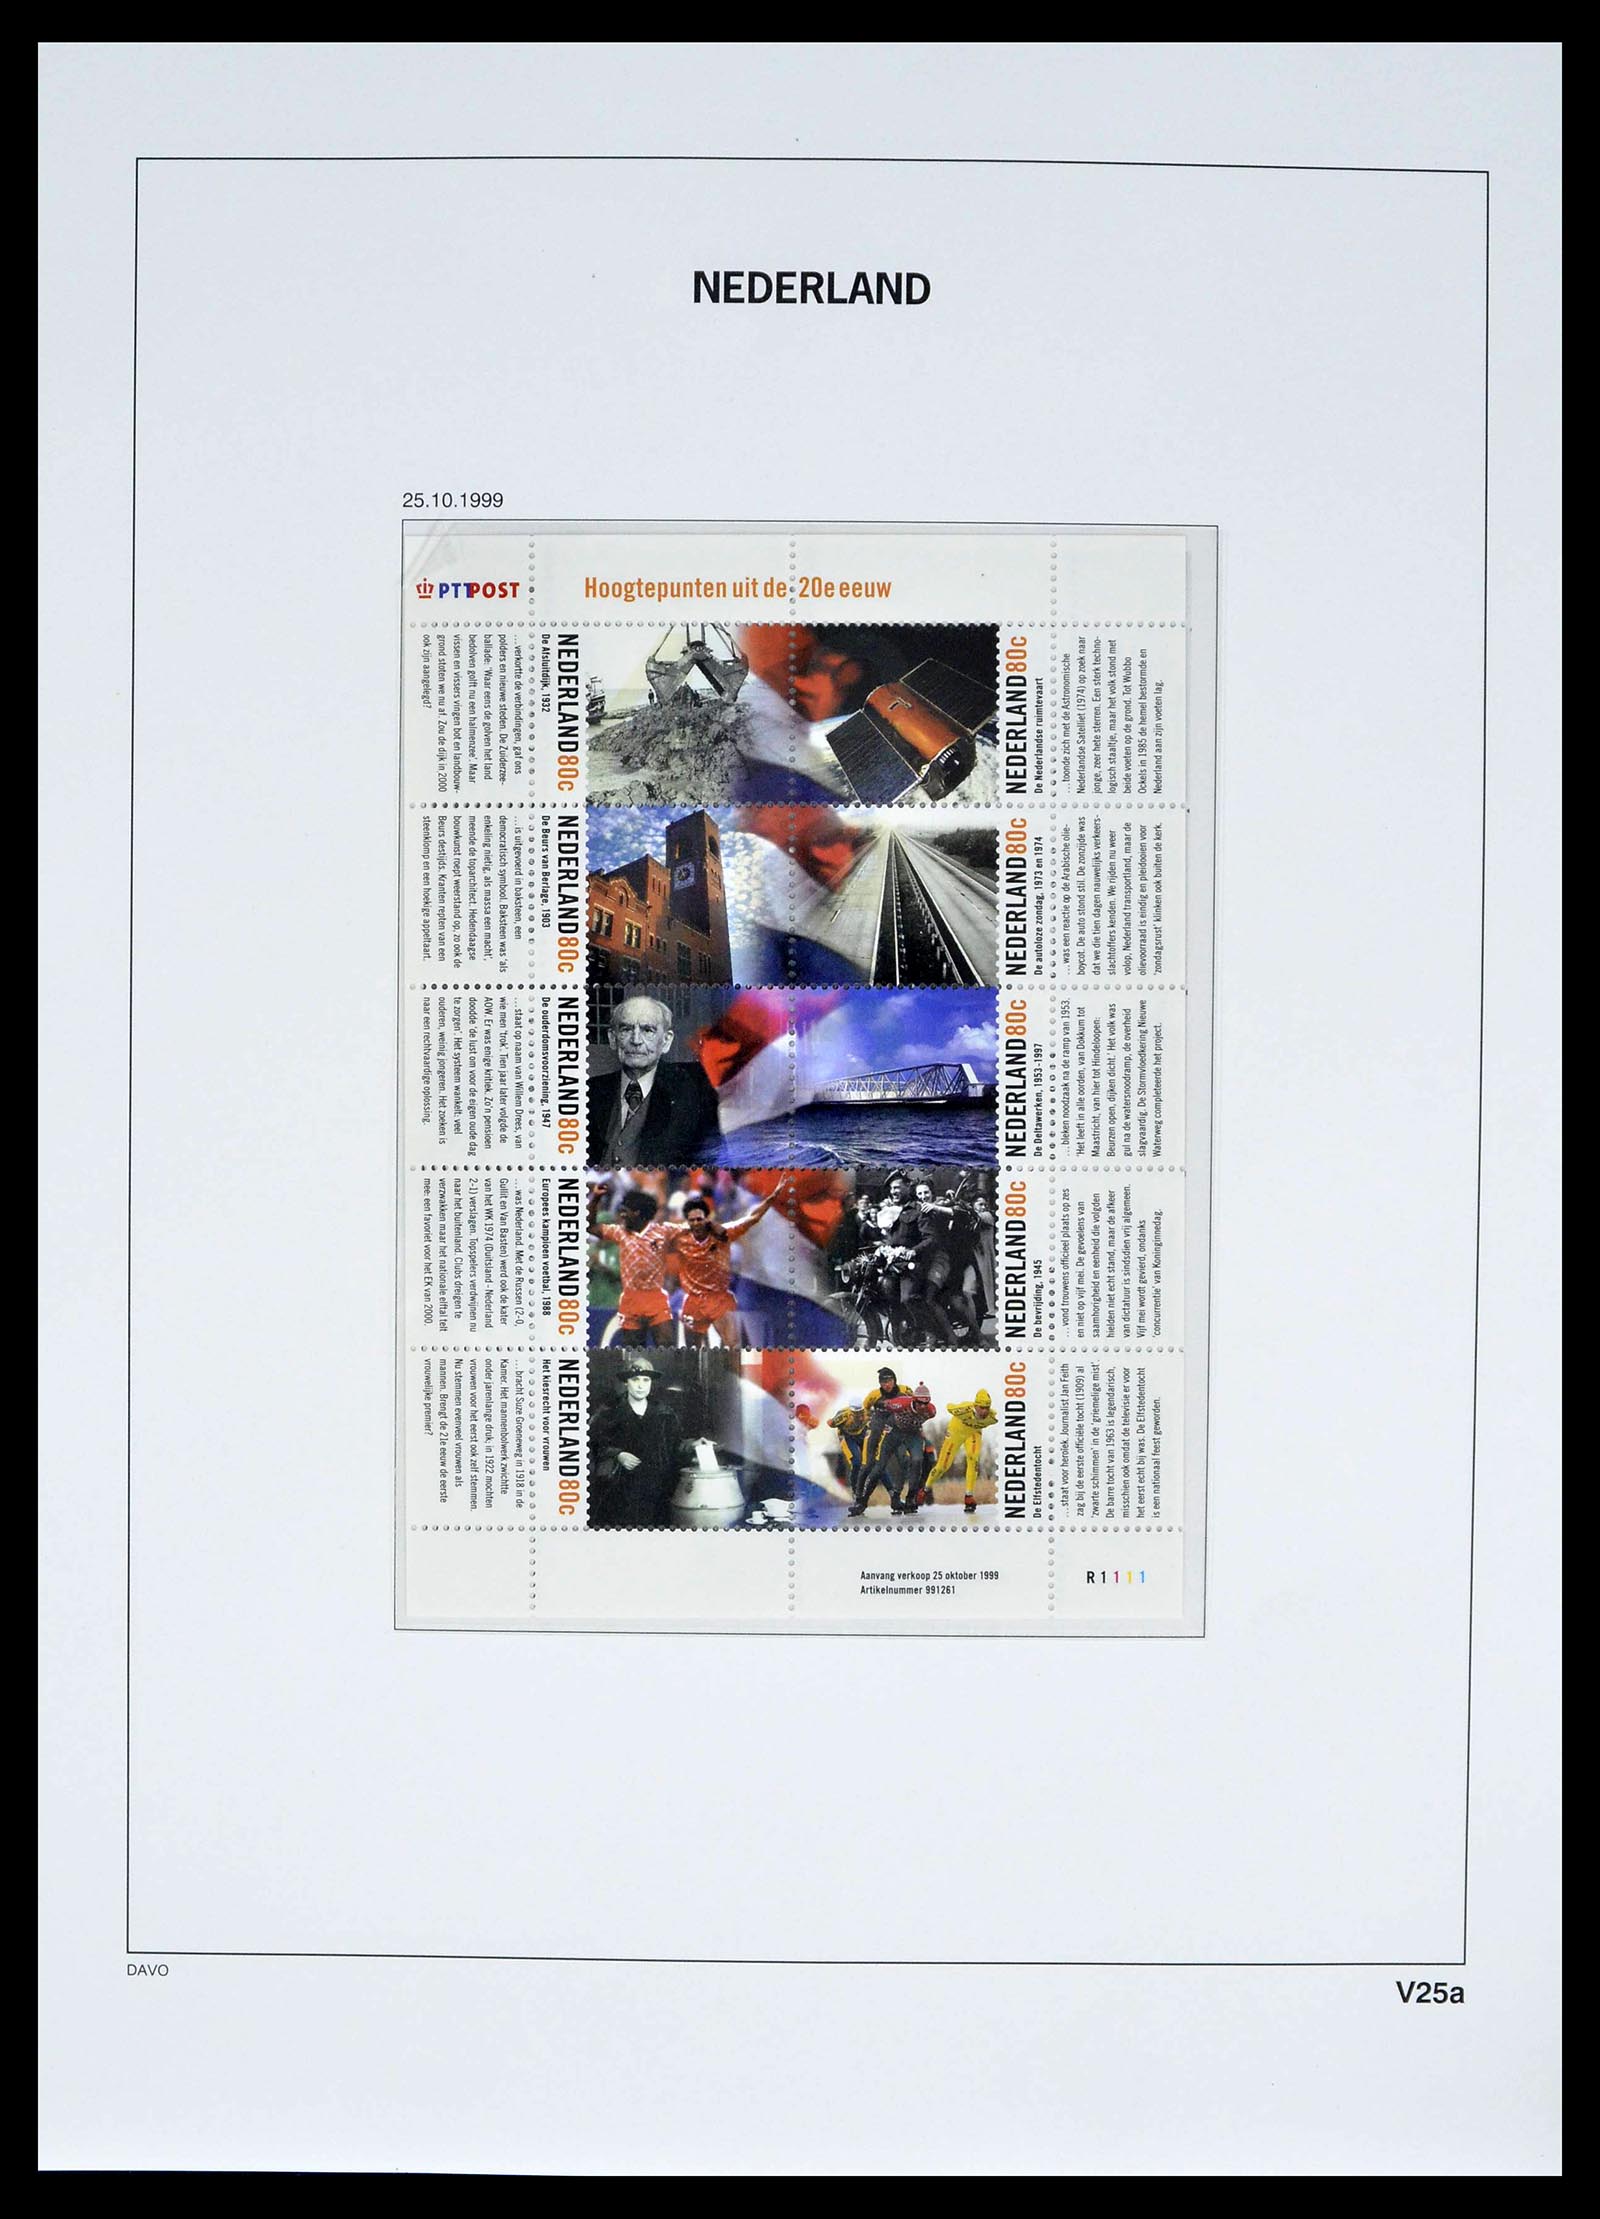 39134 0037 - Stamp collection 39134 Netherlands sheetlets 1992-2019!